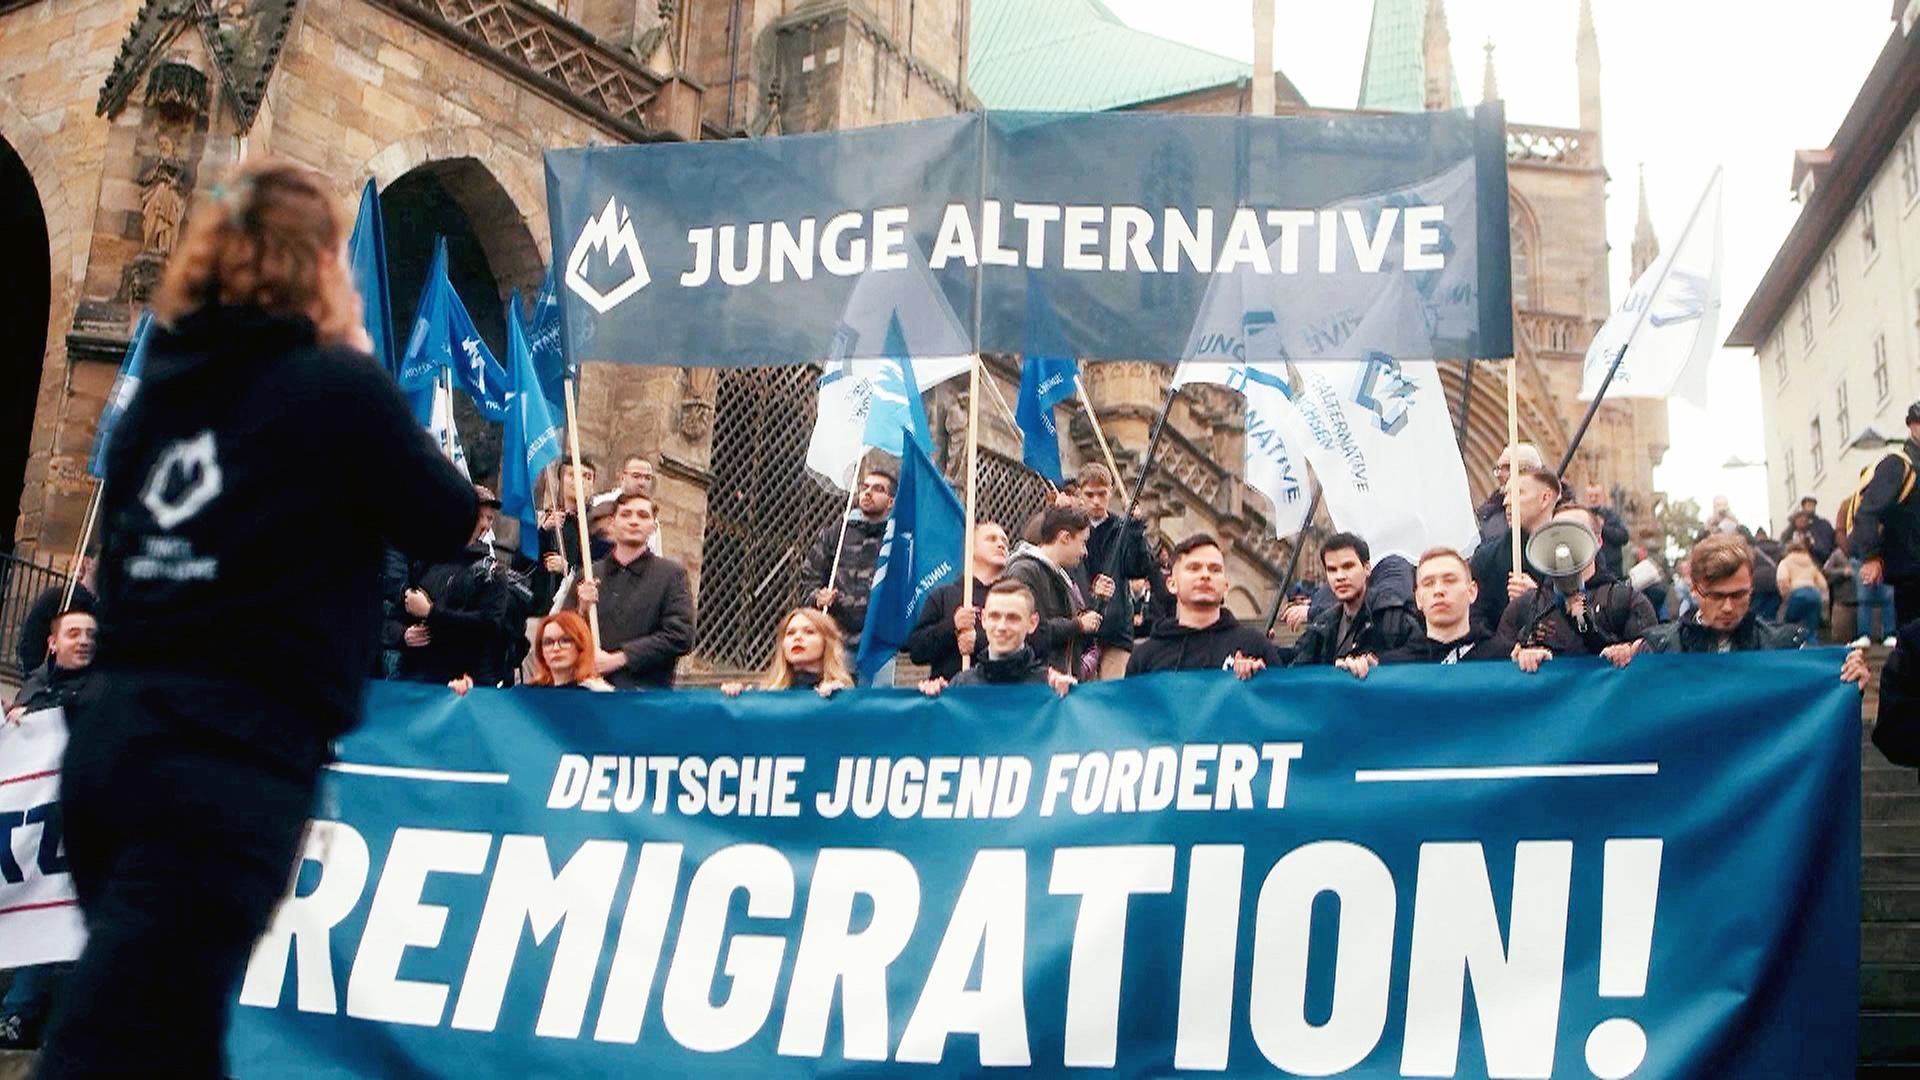 Demo "Junge Alternative", Teilnehmer mit Banner: "Deutsche Jugend fordert Remigration!"